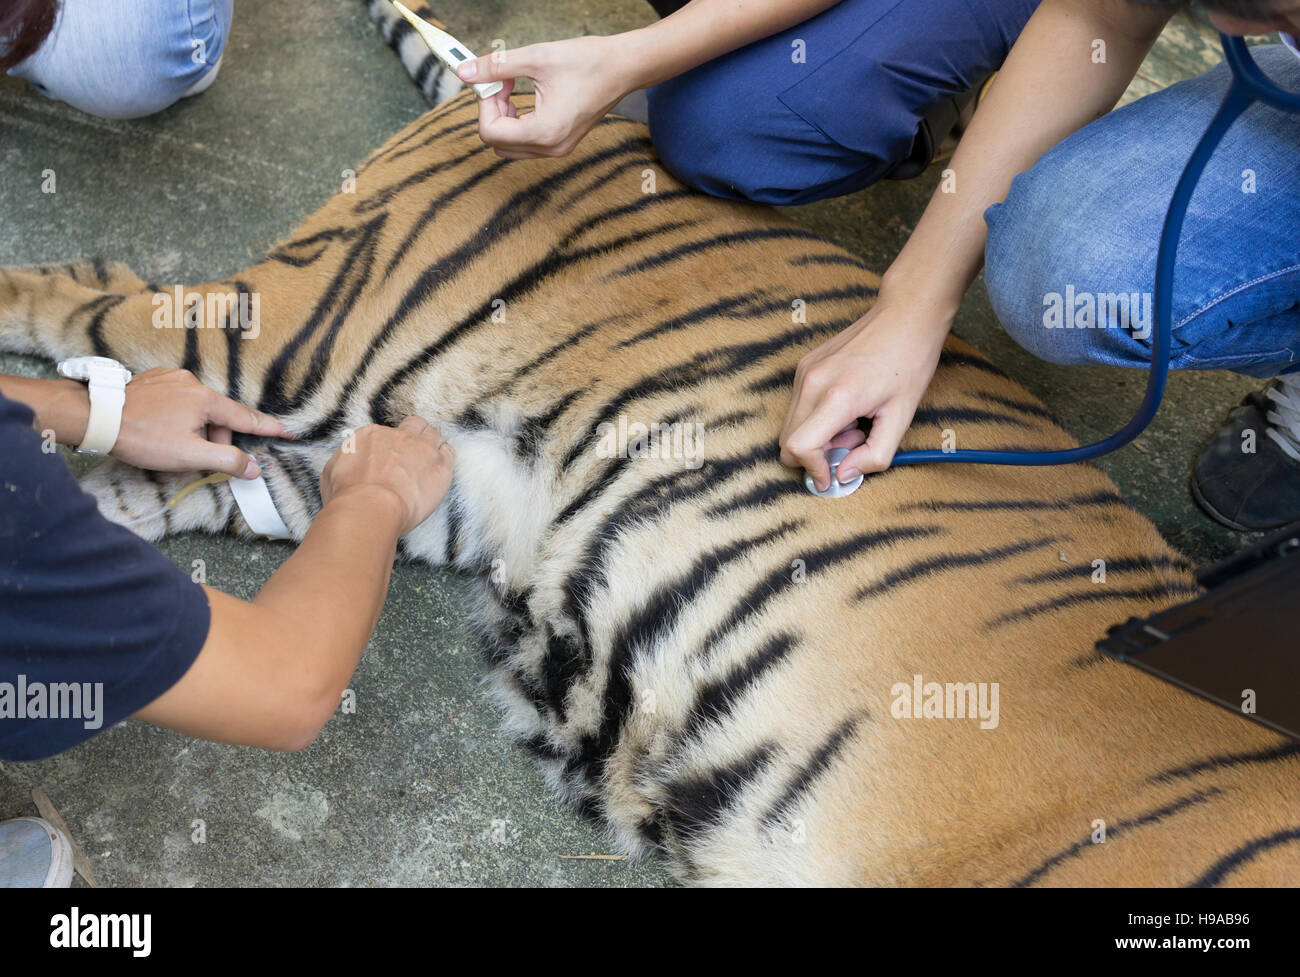 Tierarzt behandeln die Tiger in einem zoo Stockfoto